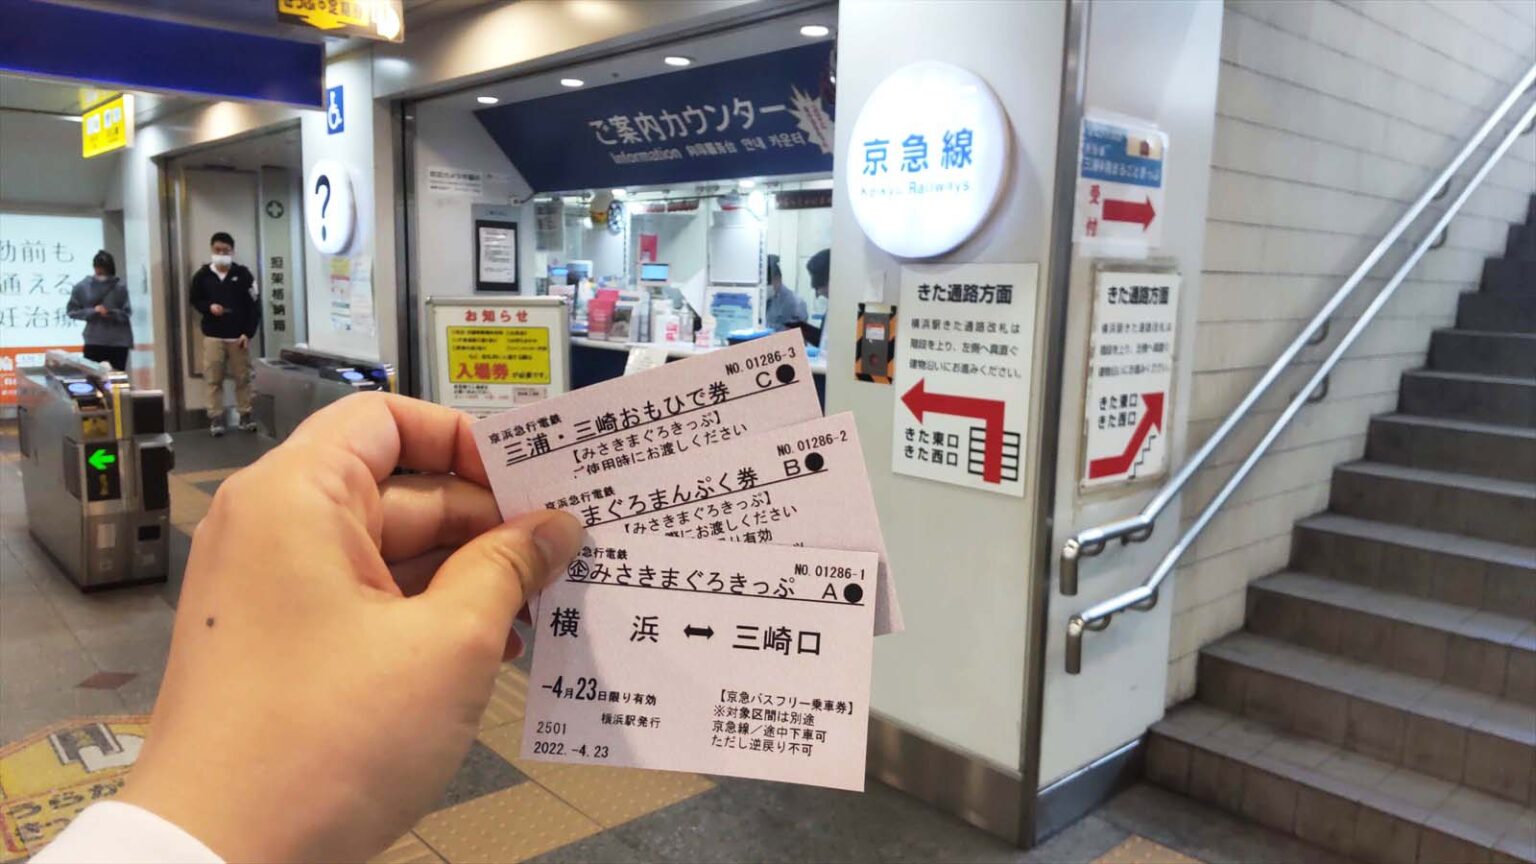 今回は京急横浜駅から利用。A・B・Cと3枚のきっぷが渡されます。